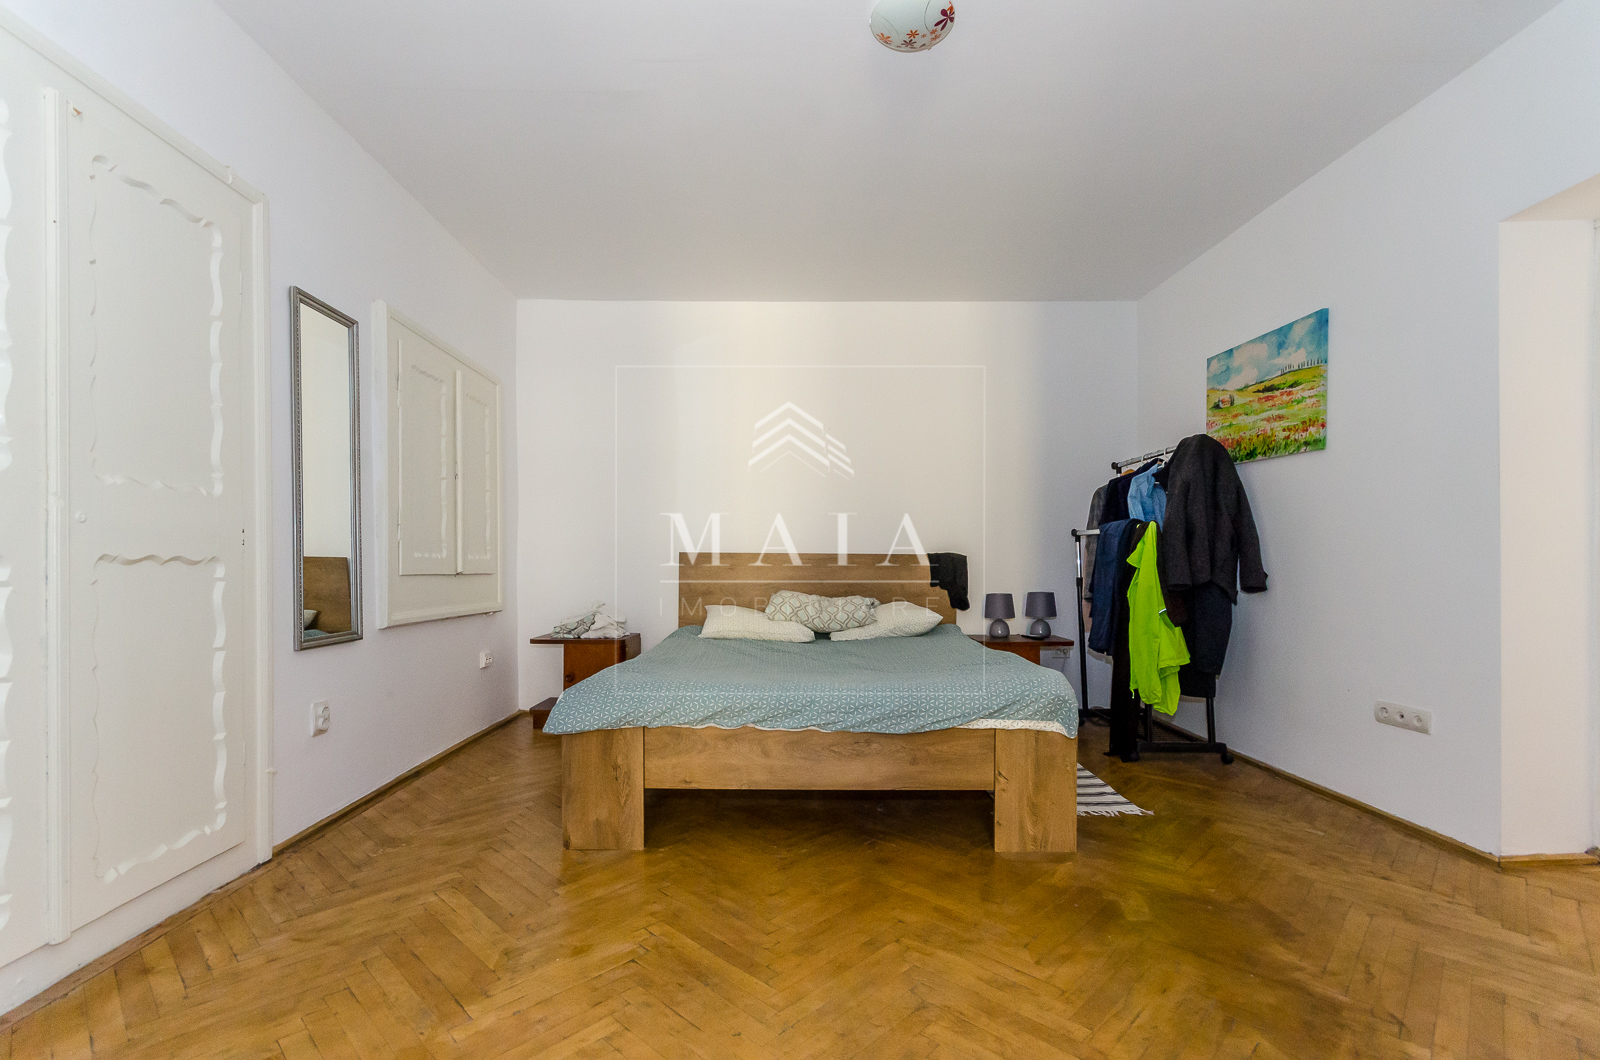 Apartament 2 camere, Ultracentral-1 minut de Piata Mare, mobilat, pivnita